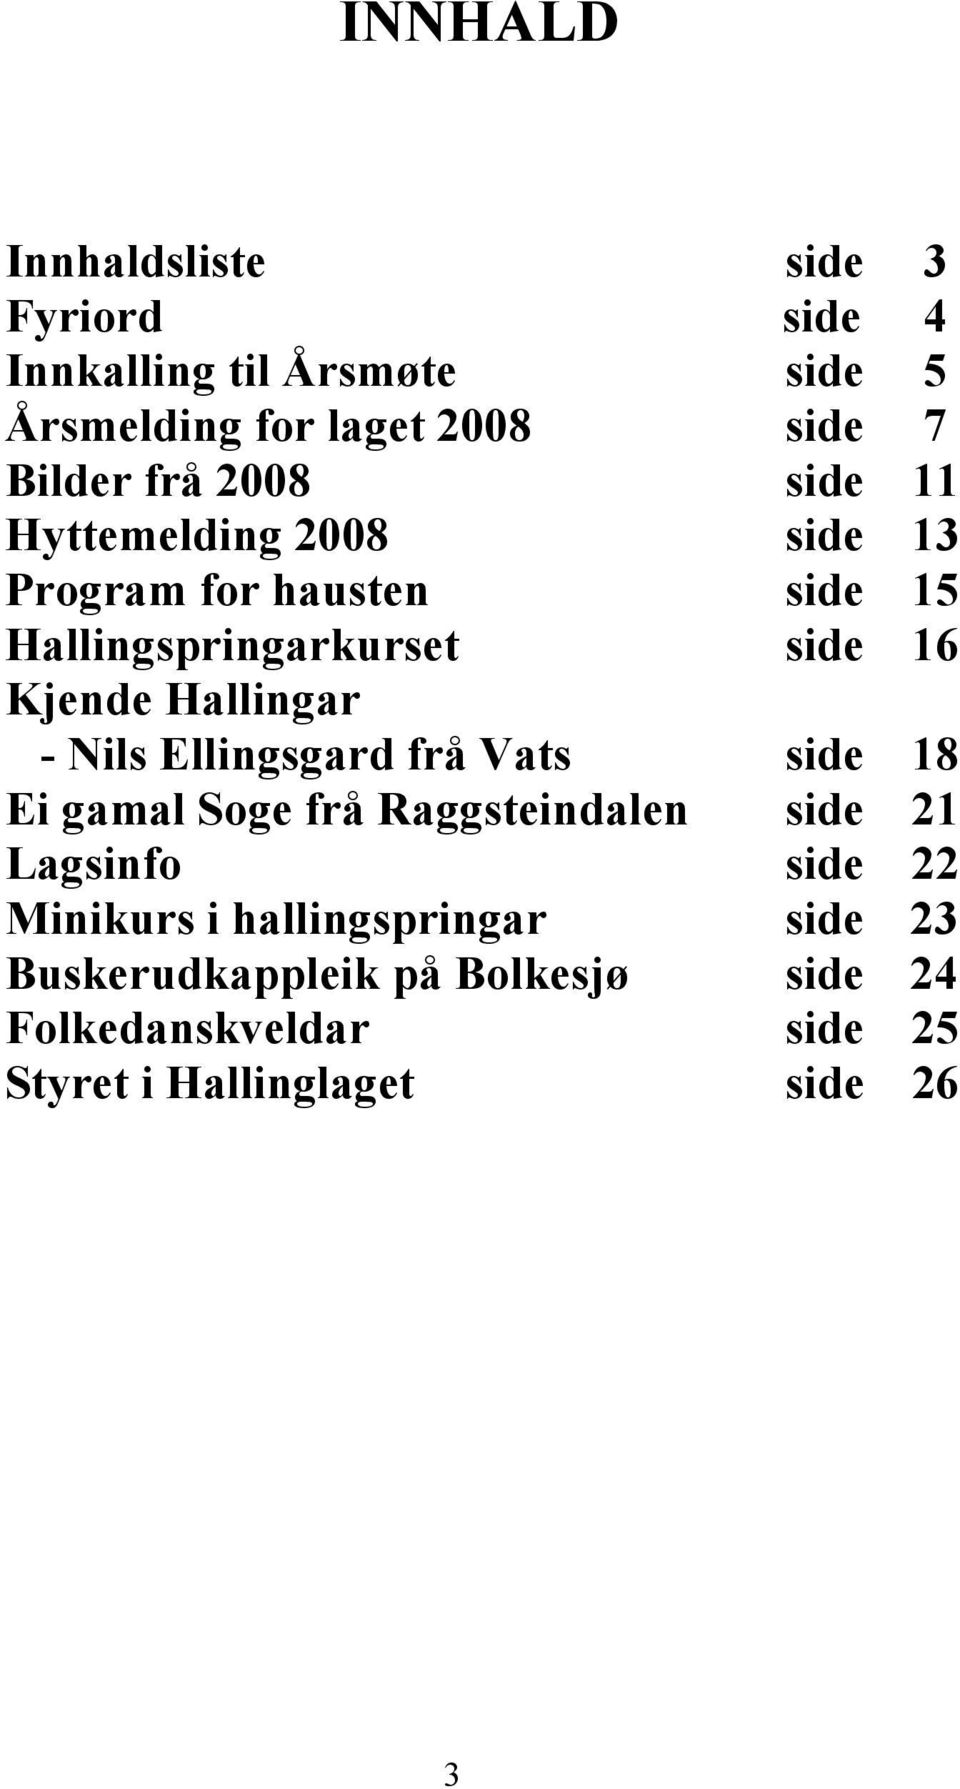 Hallingar - Nils Ellingsgard frå Vats side 18 Ei gamal Soge frå Raggsteindalen side 21 Lagsinfo side 22 Minikurs